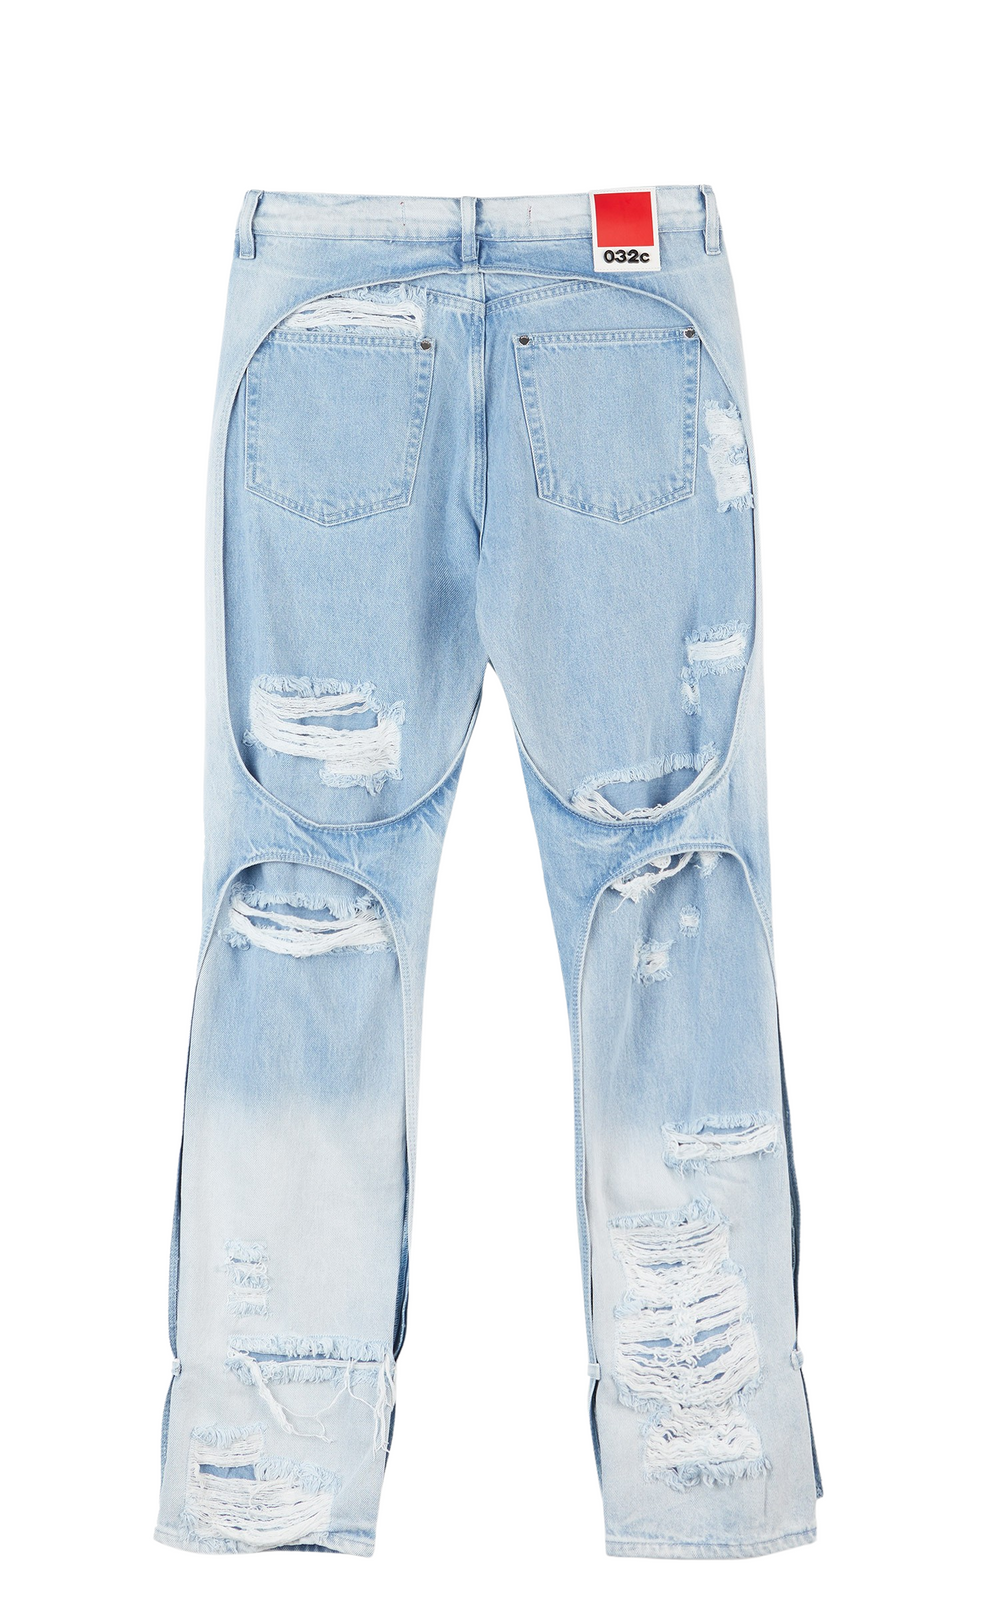 032c 'Destroyed' Blue Jeans